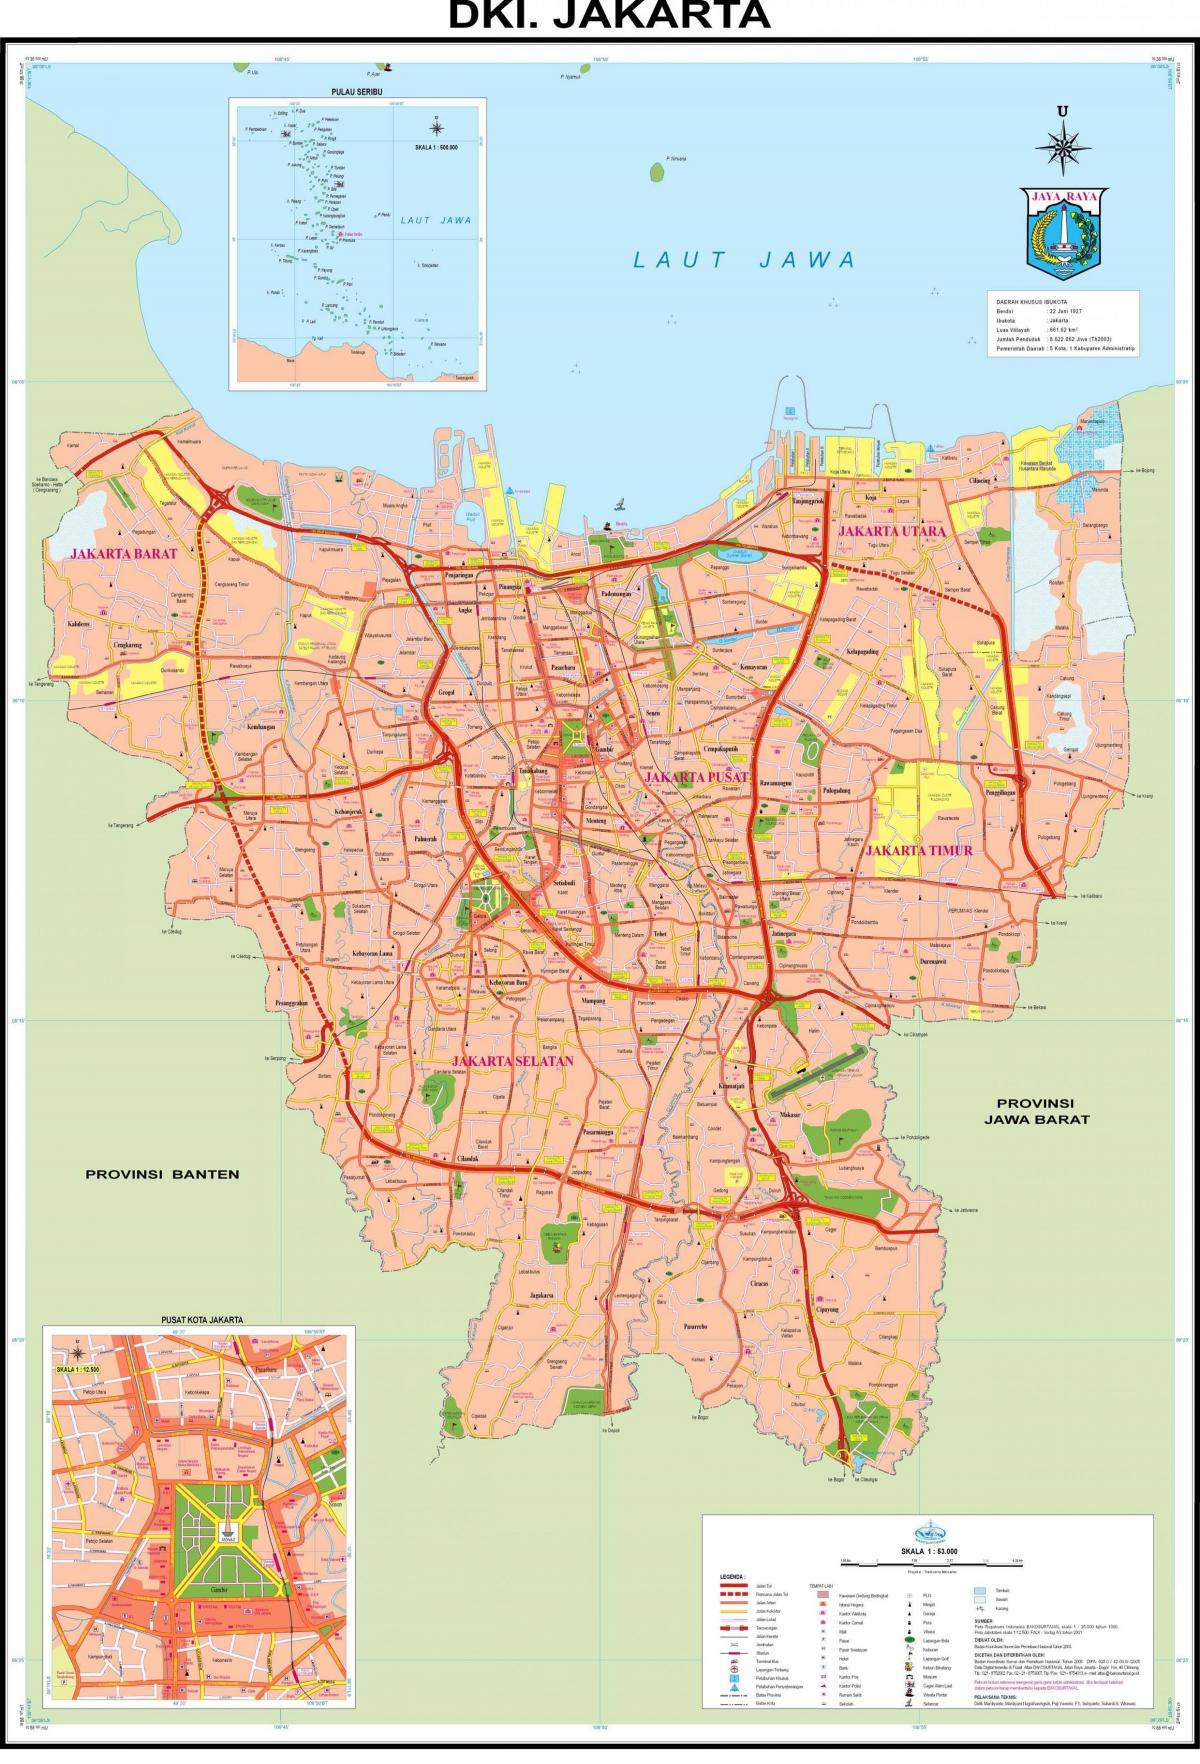 जकार्ता शहर के नक्शे